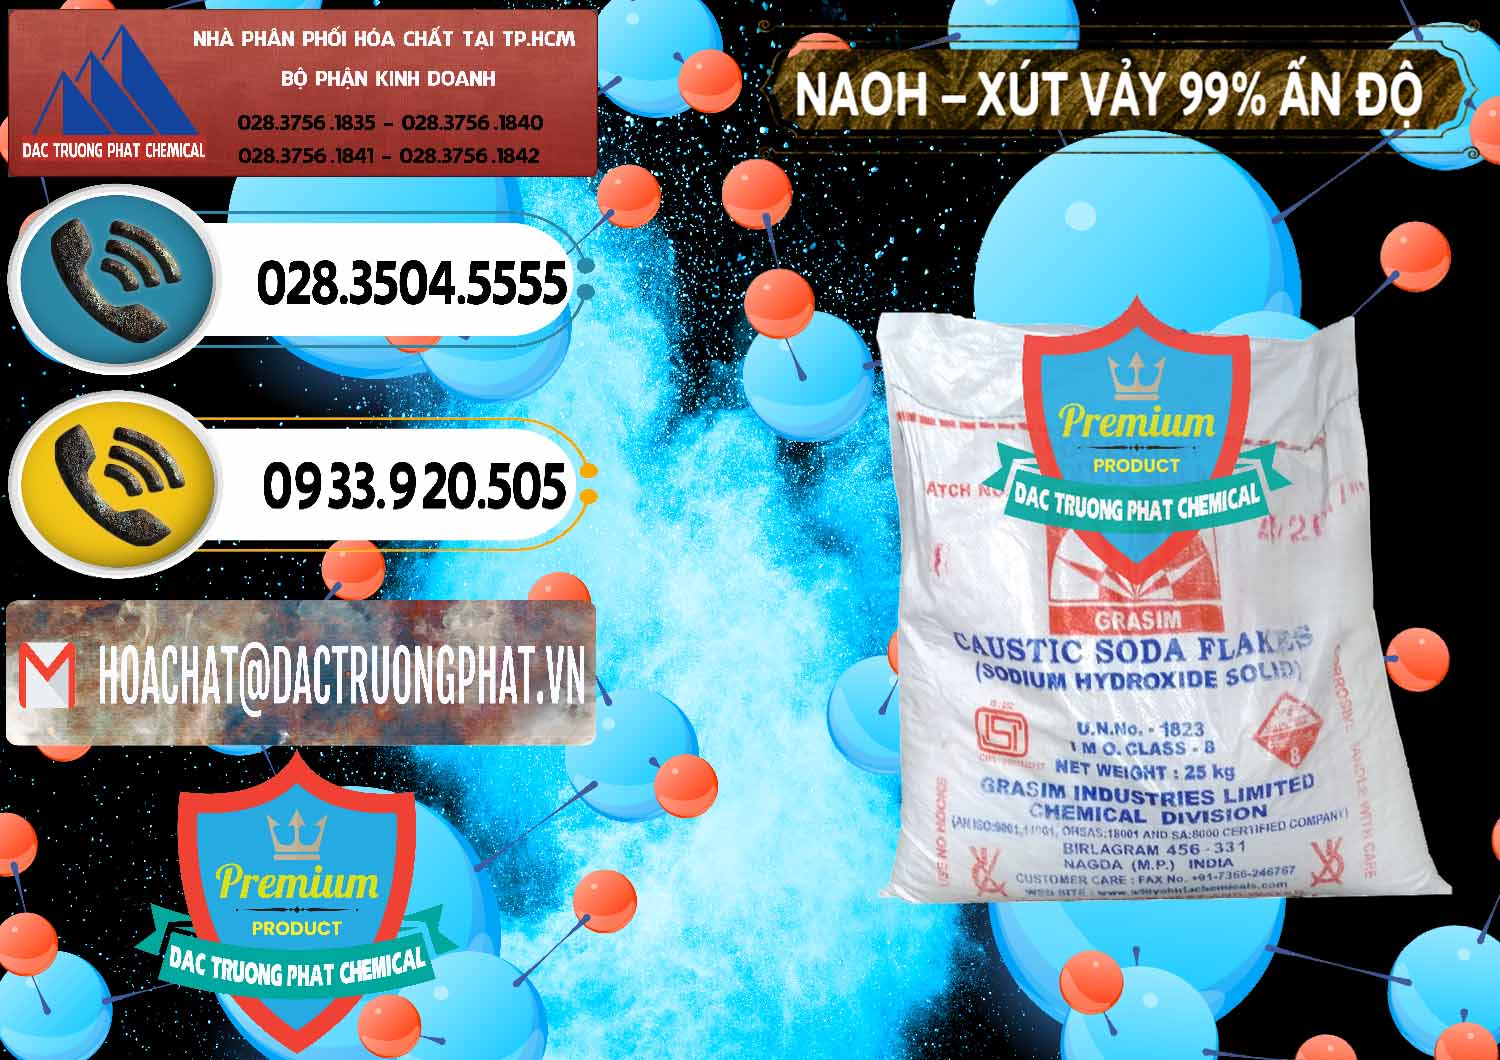 Cung ứng & bán Xút Vảy - NaOH Vảy 99% Aditya Birla Grasim Ấn Độ India - 0171 - Cty chuyên phân phối - kinh doanh hóa chất tại TP.HCM - hoachatdetnhuom.vn